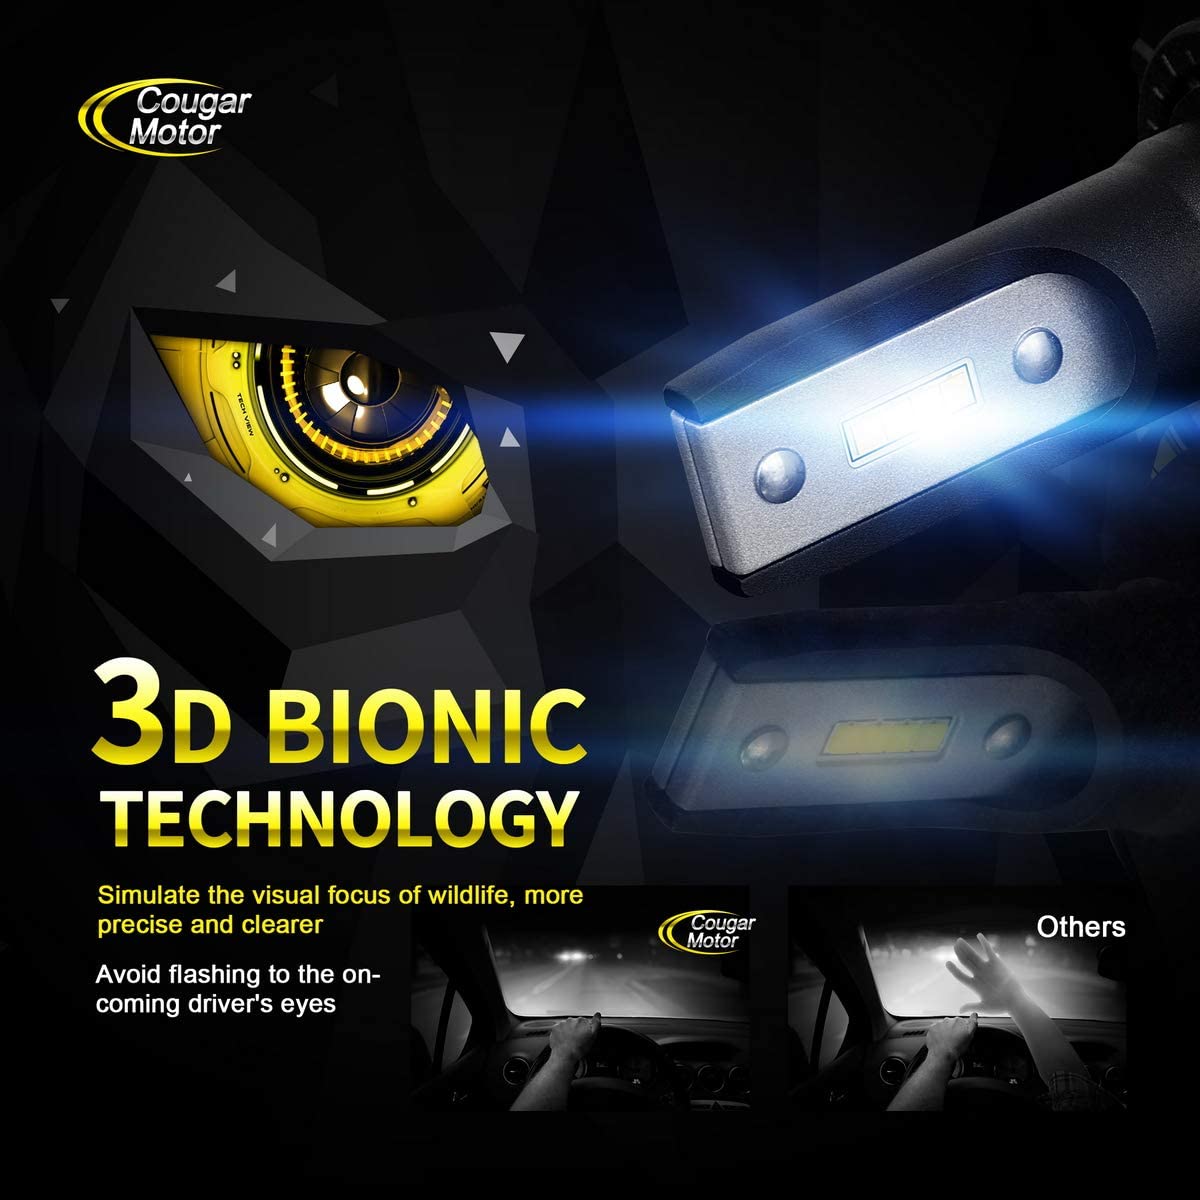 Kit H7-LED-Lampen, belüftet für Auto und Motorrad - All in One Technologie